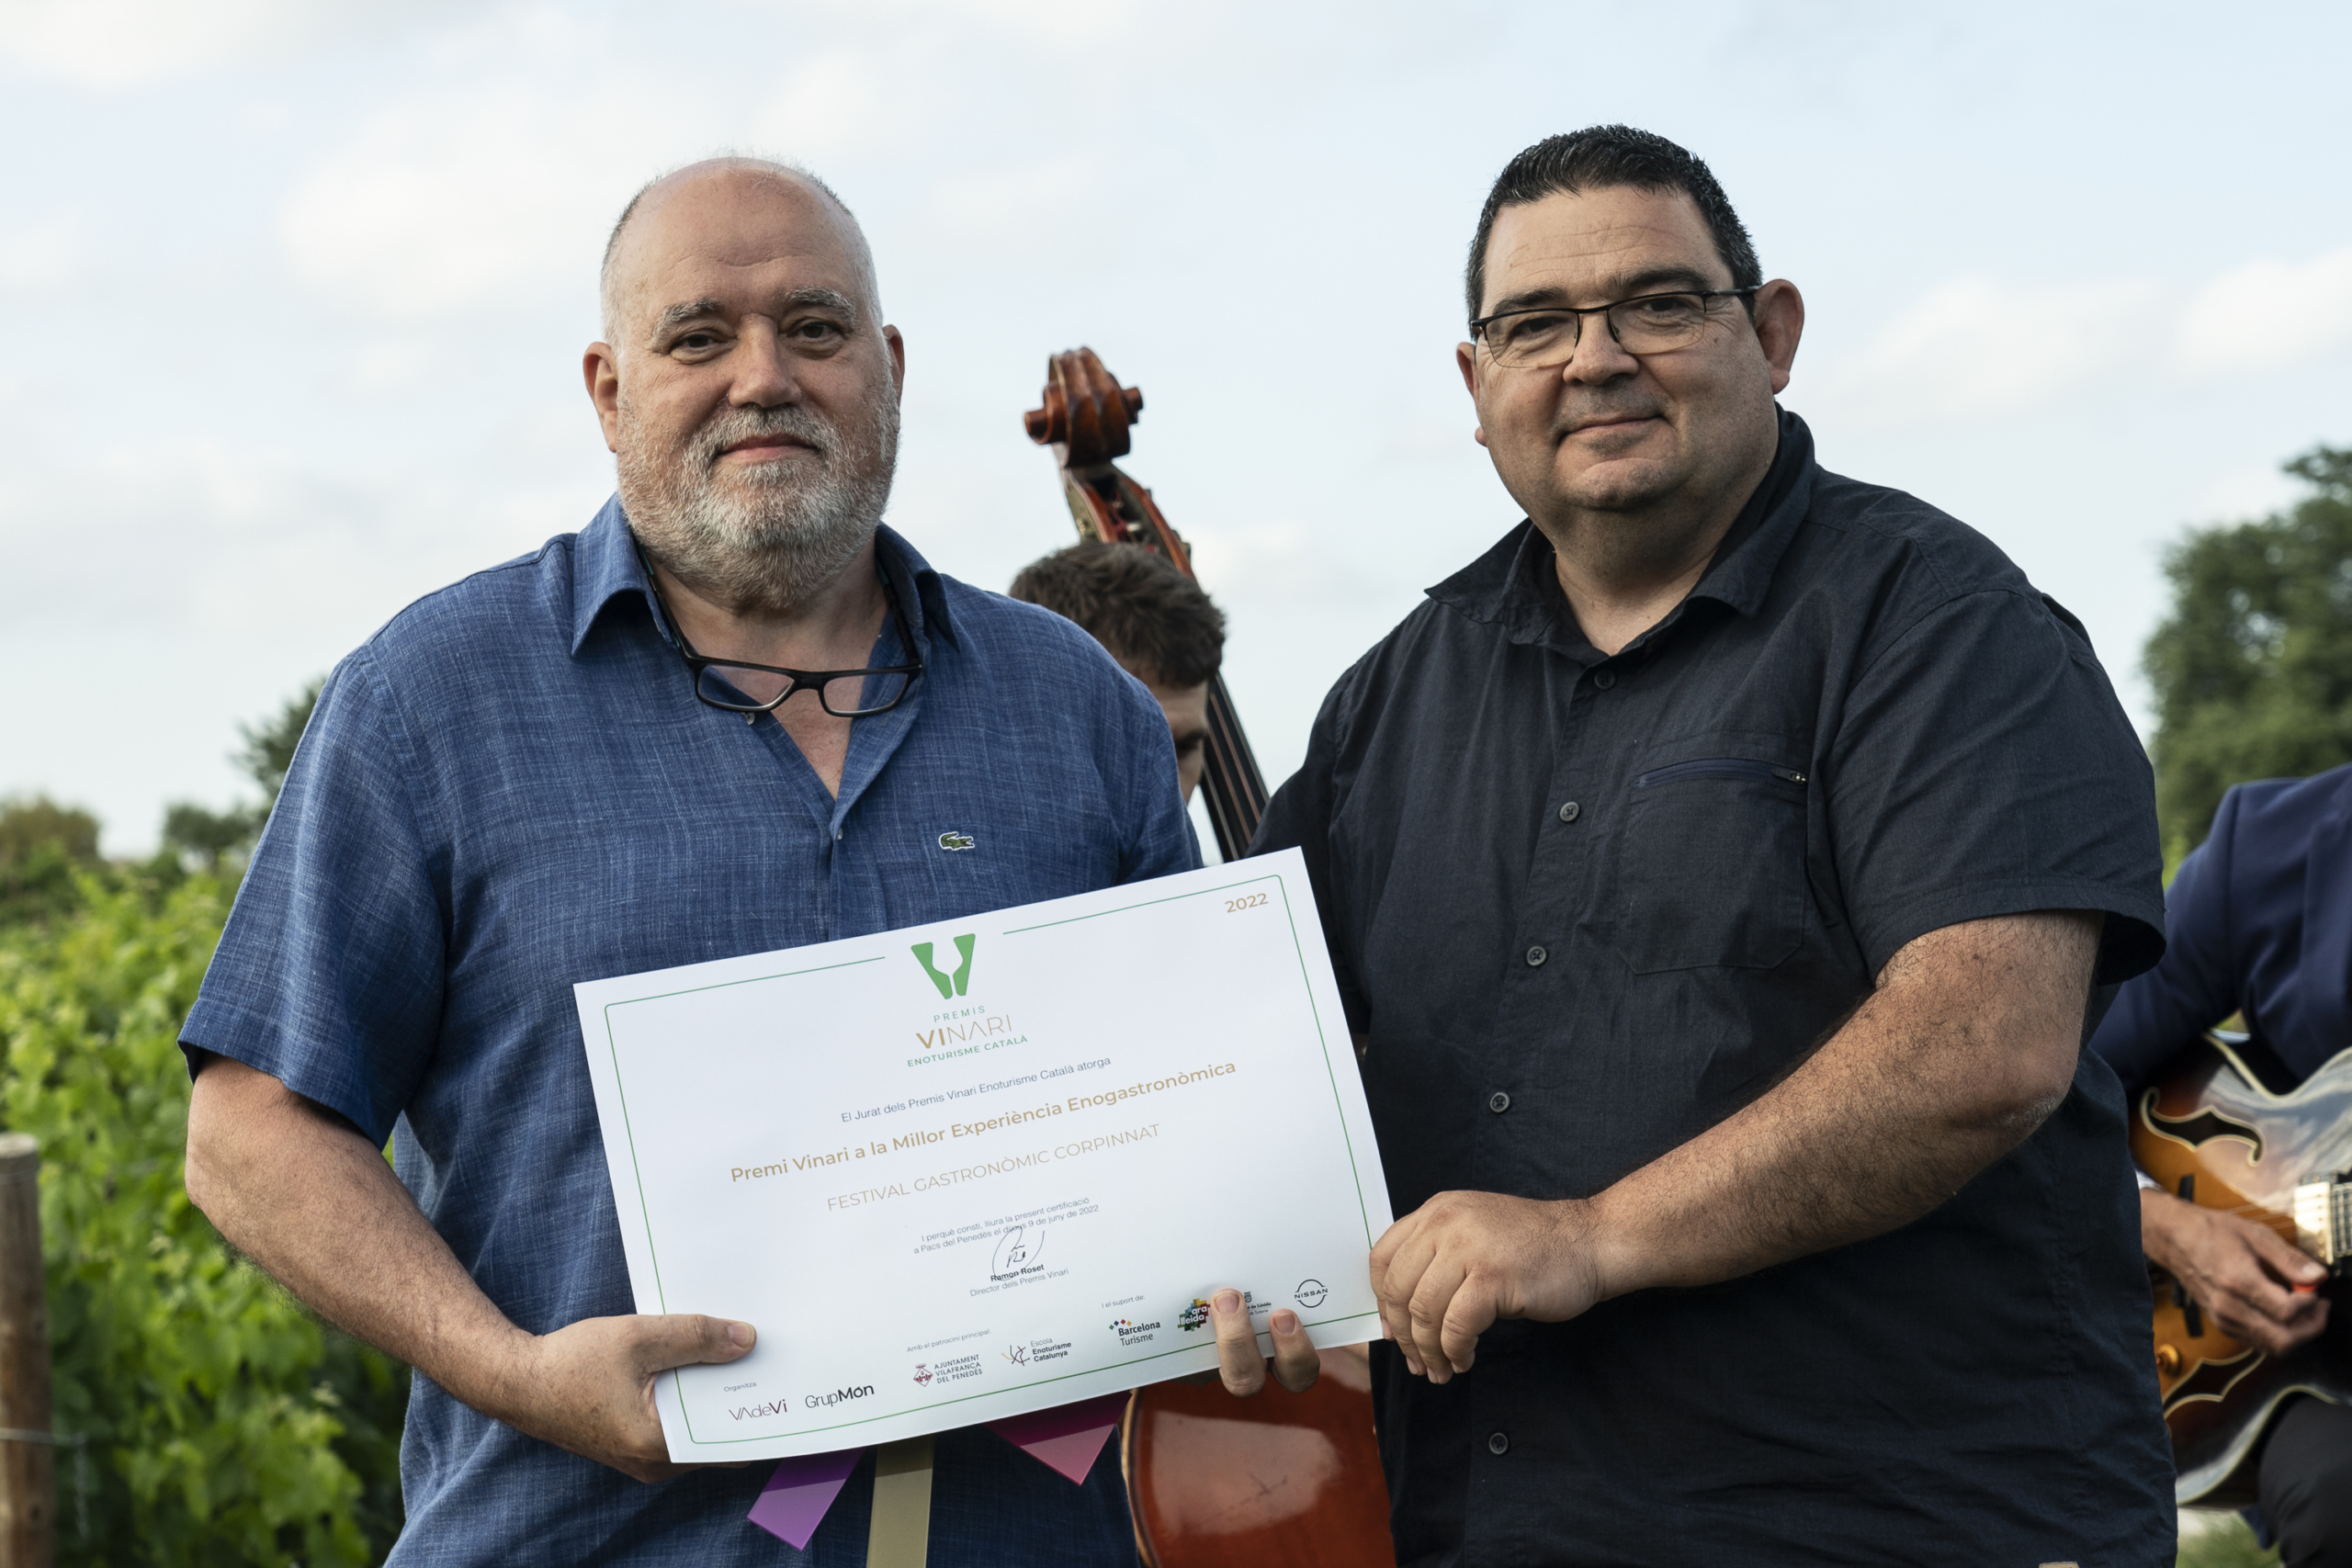 El director dels Vinari va lliurar el premi al Festival Gastronòmic CORPINNAT 